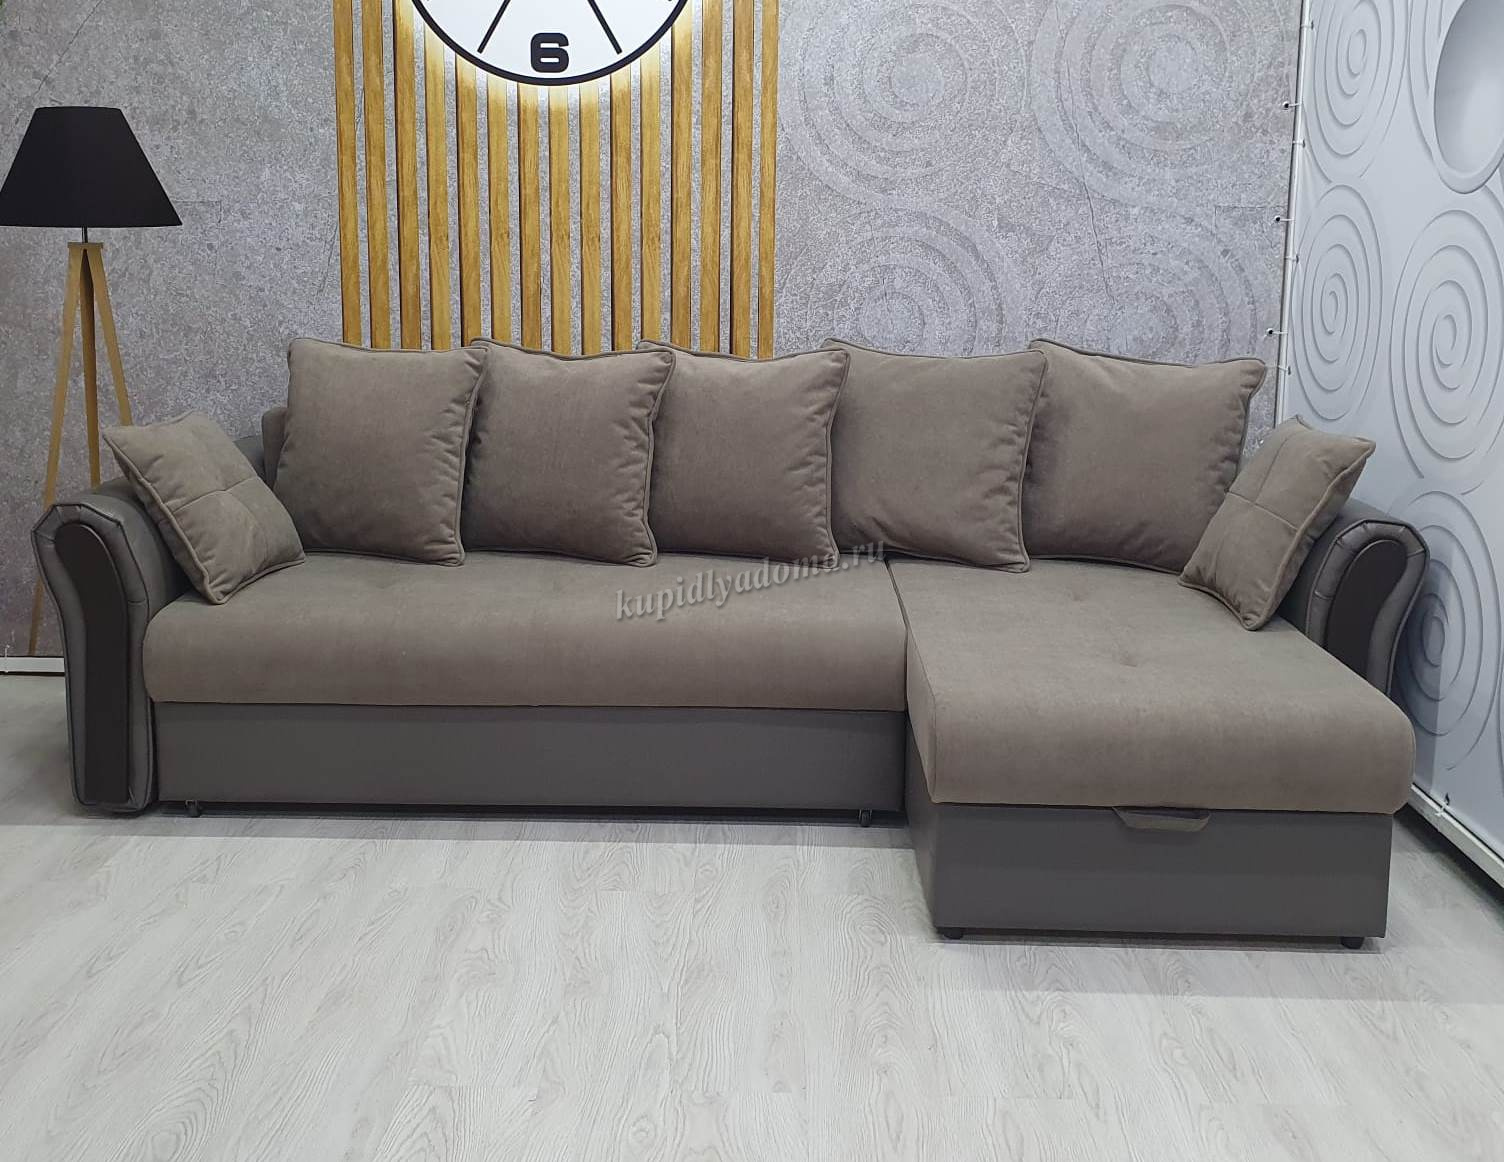 Угловой диван-кровать Адмирал независимый пружинный блок К 2 кат. (057)купить в Хабаровске по низкой цене в интернет магазине мебели